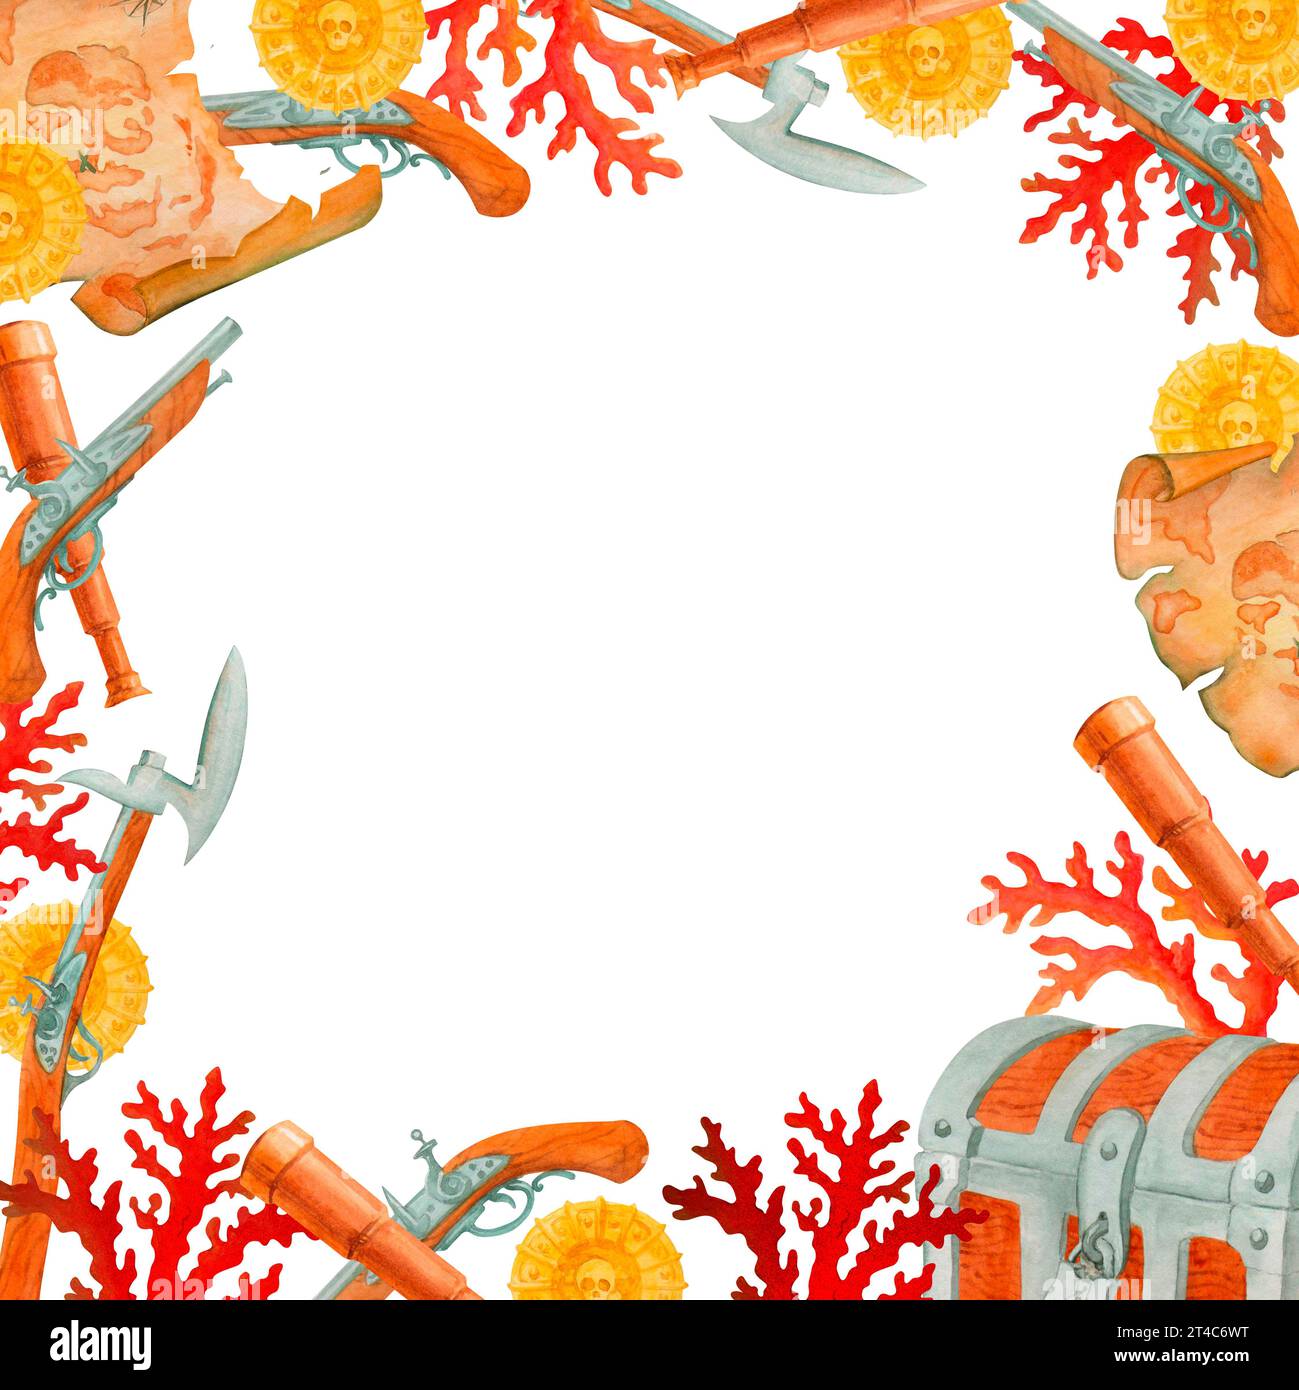 Modèle. Simple frontière ou cadre, fait de coraux, carte au Trésor ancienne, spyglass, armes de pirate, coffres et pièces de monnaie. illustration d'aquarelle isolée. Banque D'Images